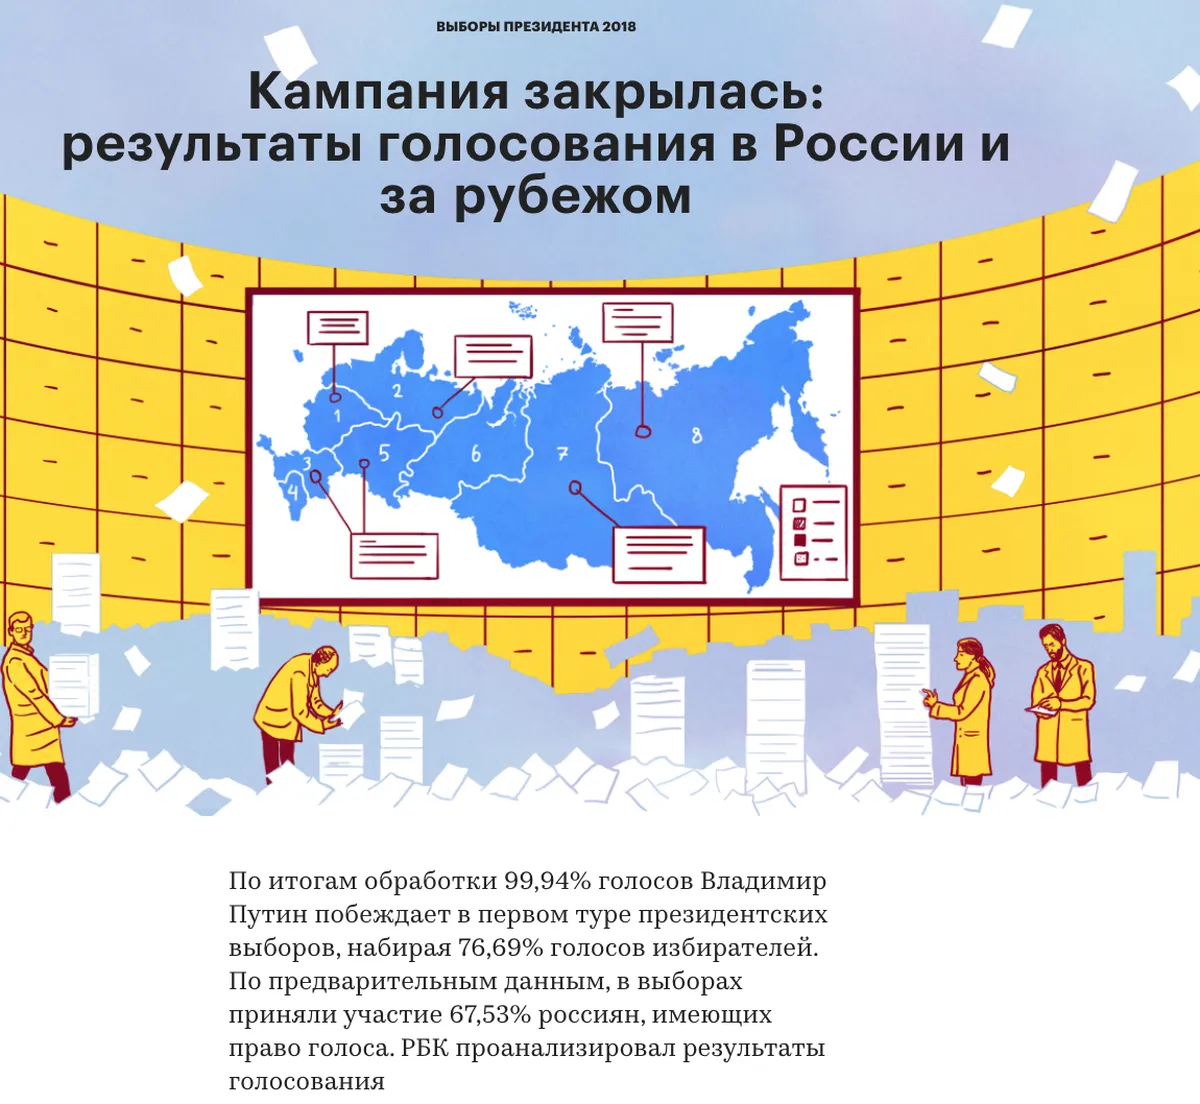 Обложка интерактивного проекта РБК об итогах выборов президента в 2018